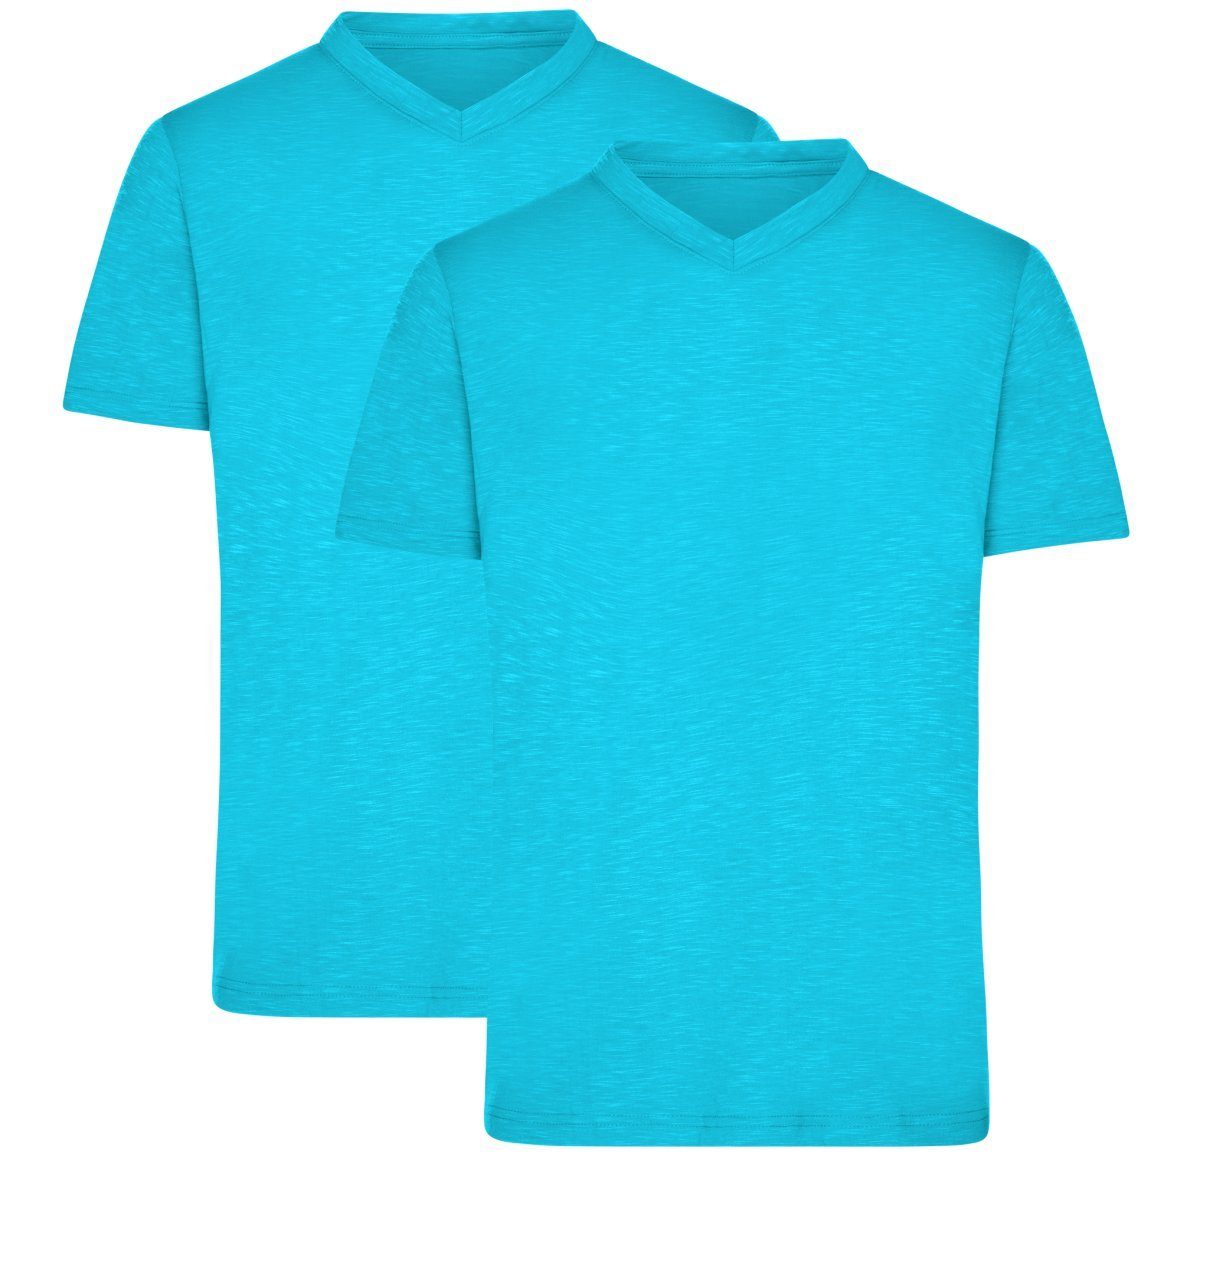 James & Nicholson T-Shirt Doppelpack Herren Funktions T-Shirt für Freizeit und Sport JN750 (Doppelpack, 2 Stück) Atmungsaktiv, feuchtigkeitsregulierend und schnelltrocknend turquoise